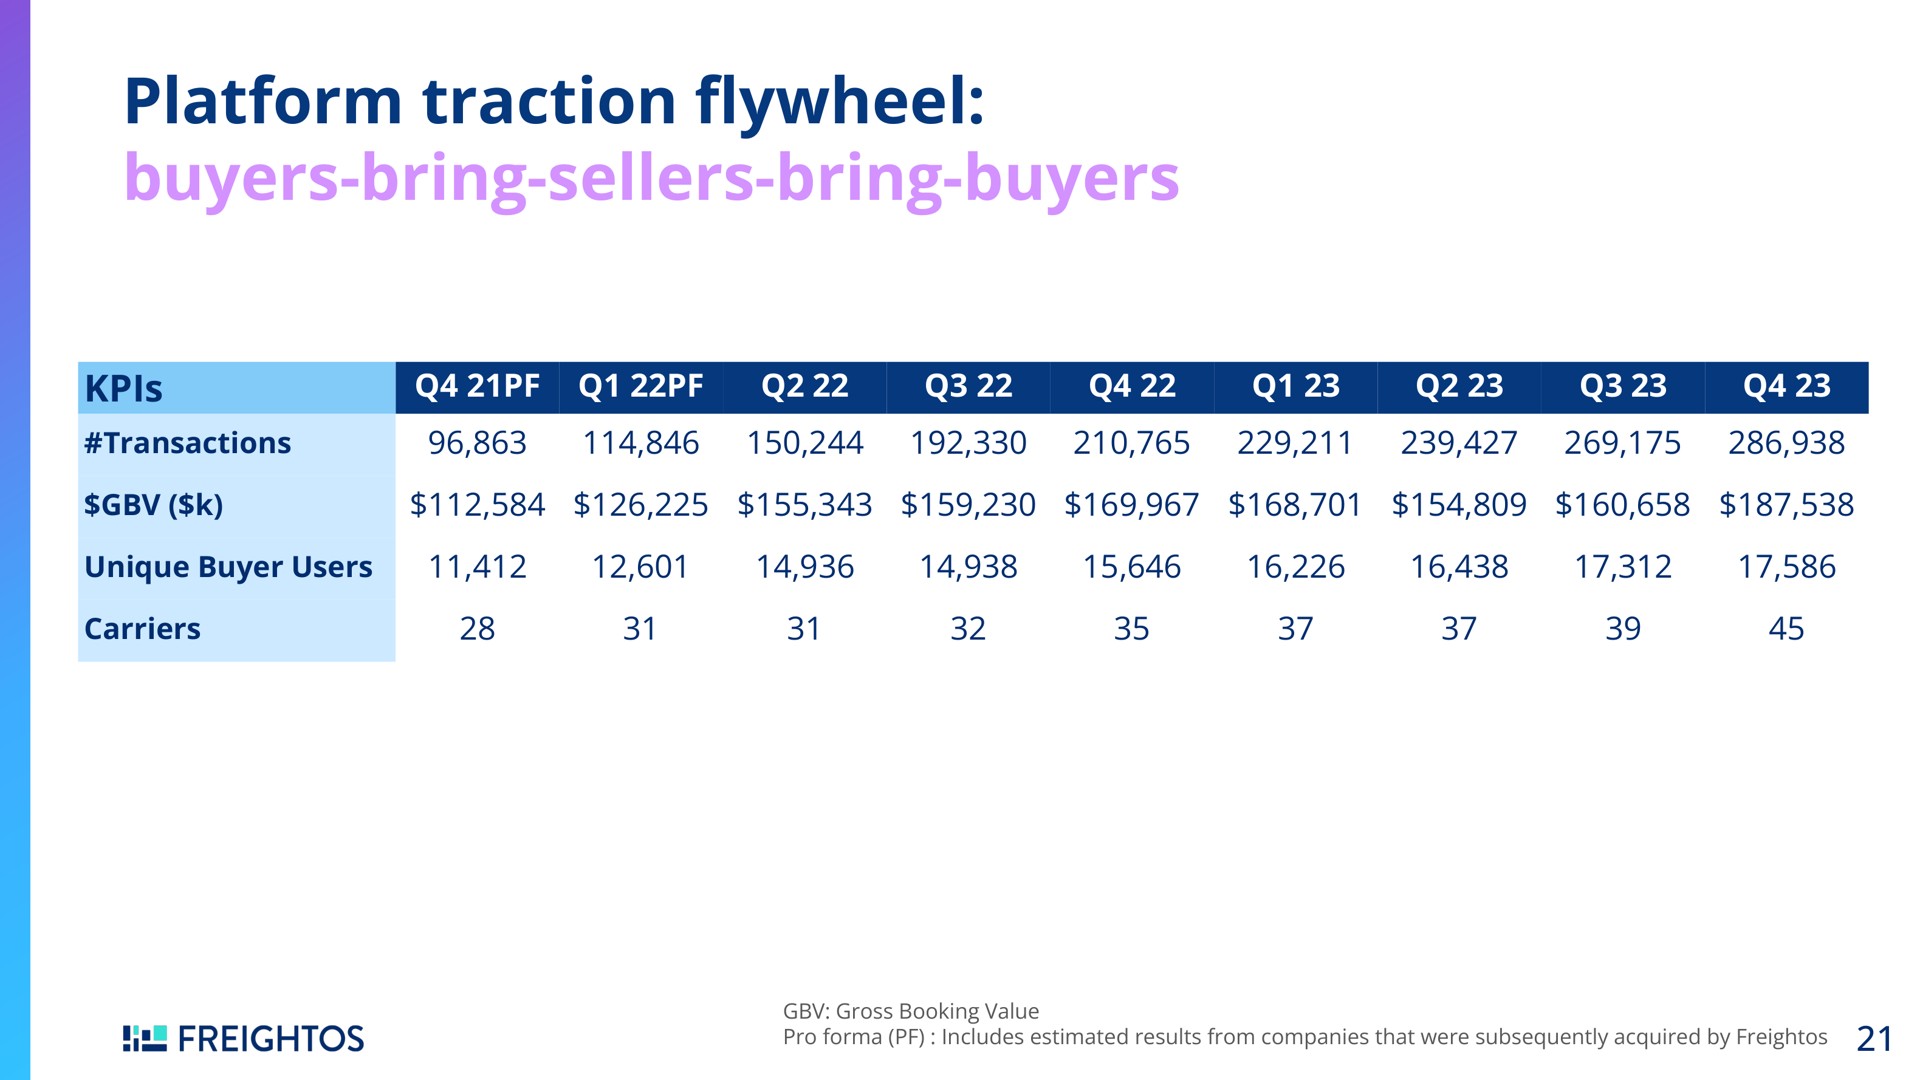 platform traction buyers bring sellers bring buyers flywheel | Freightos